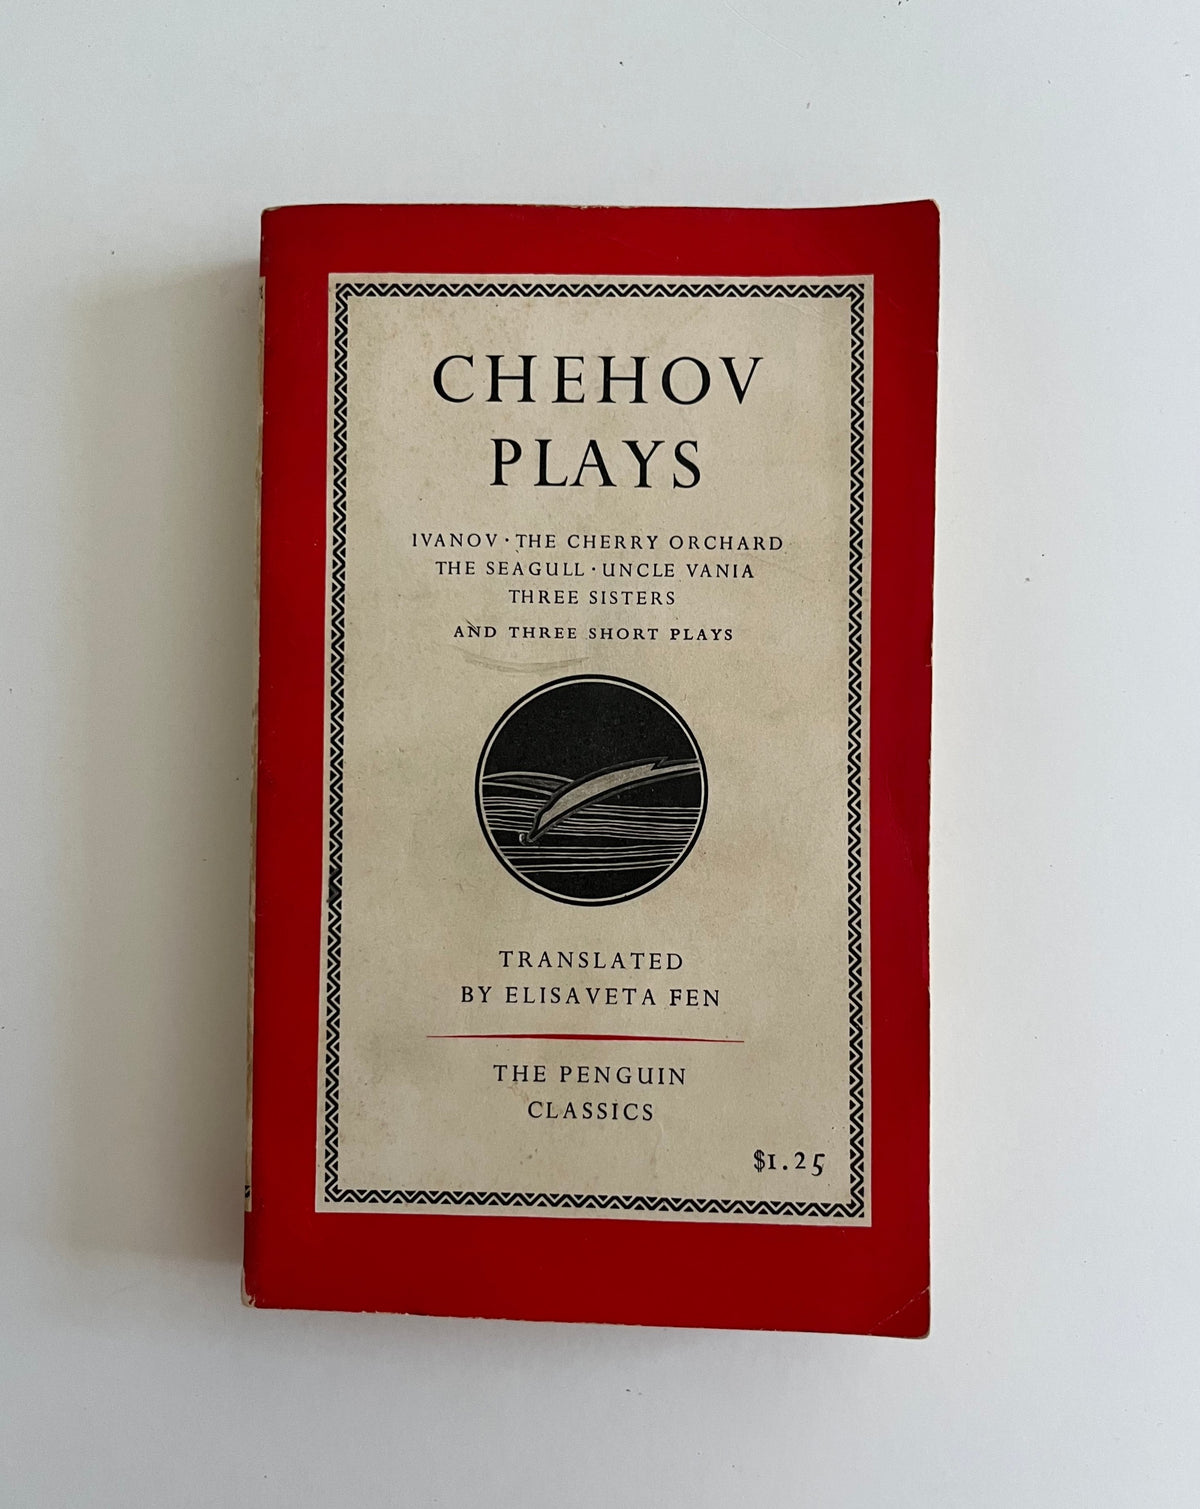 Chehov Plays by Anton Chekhov